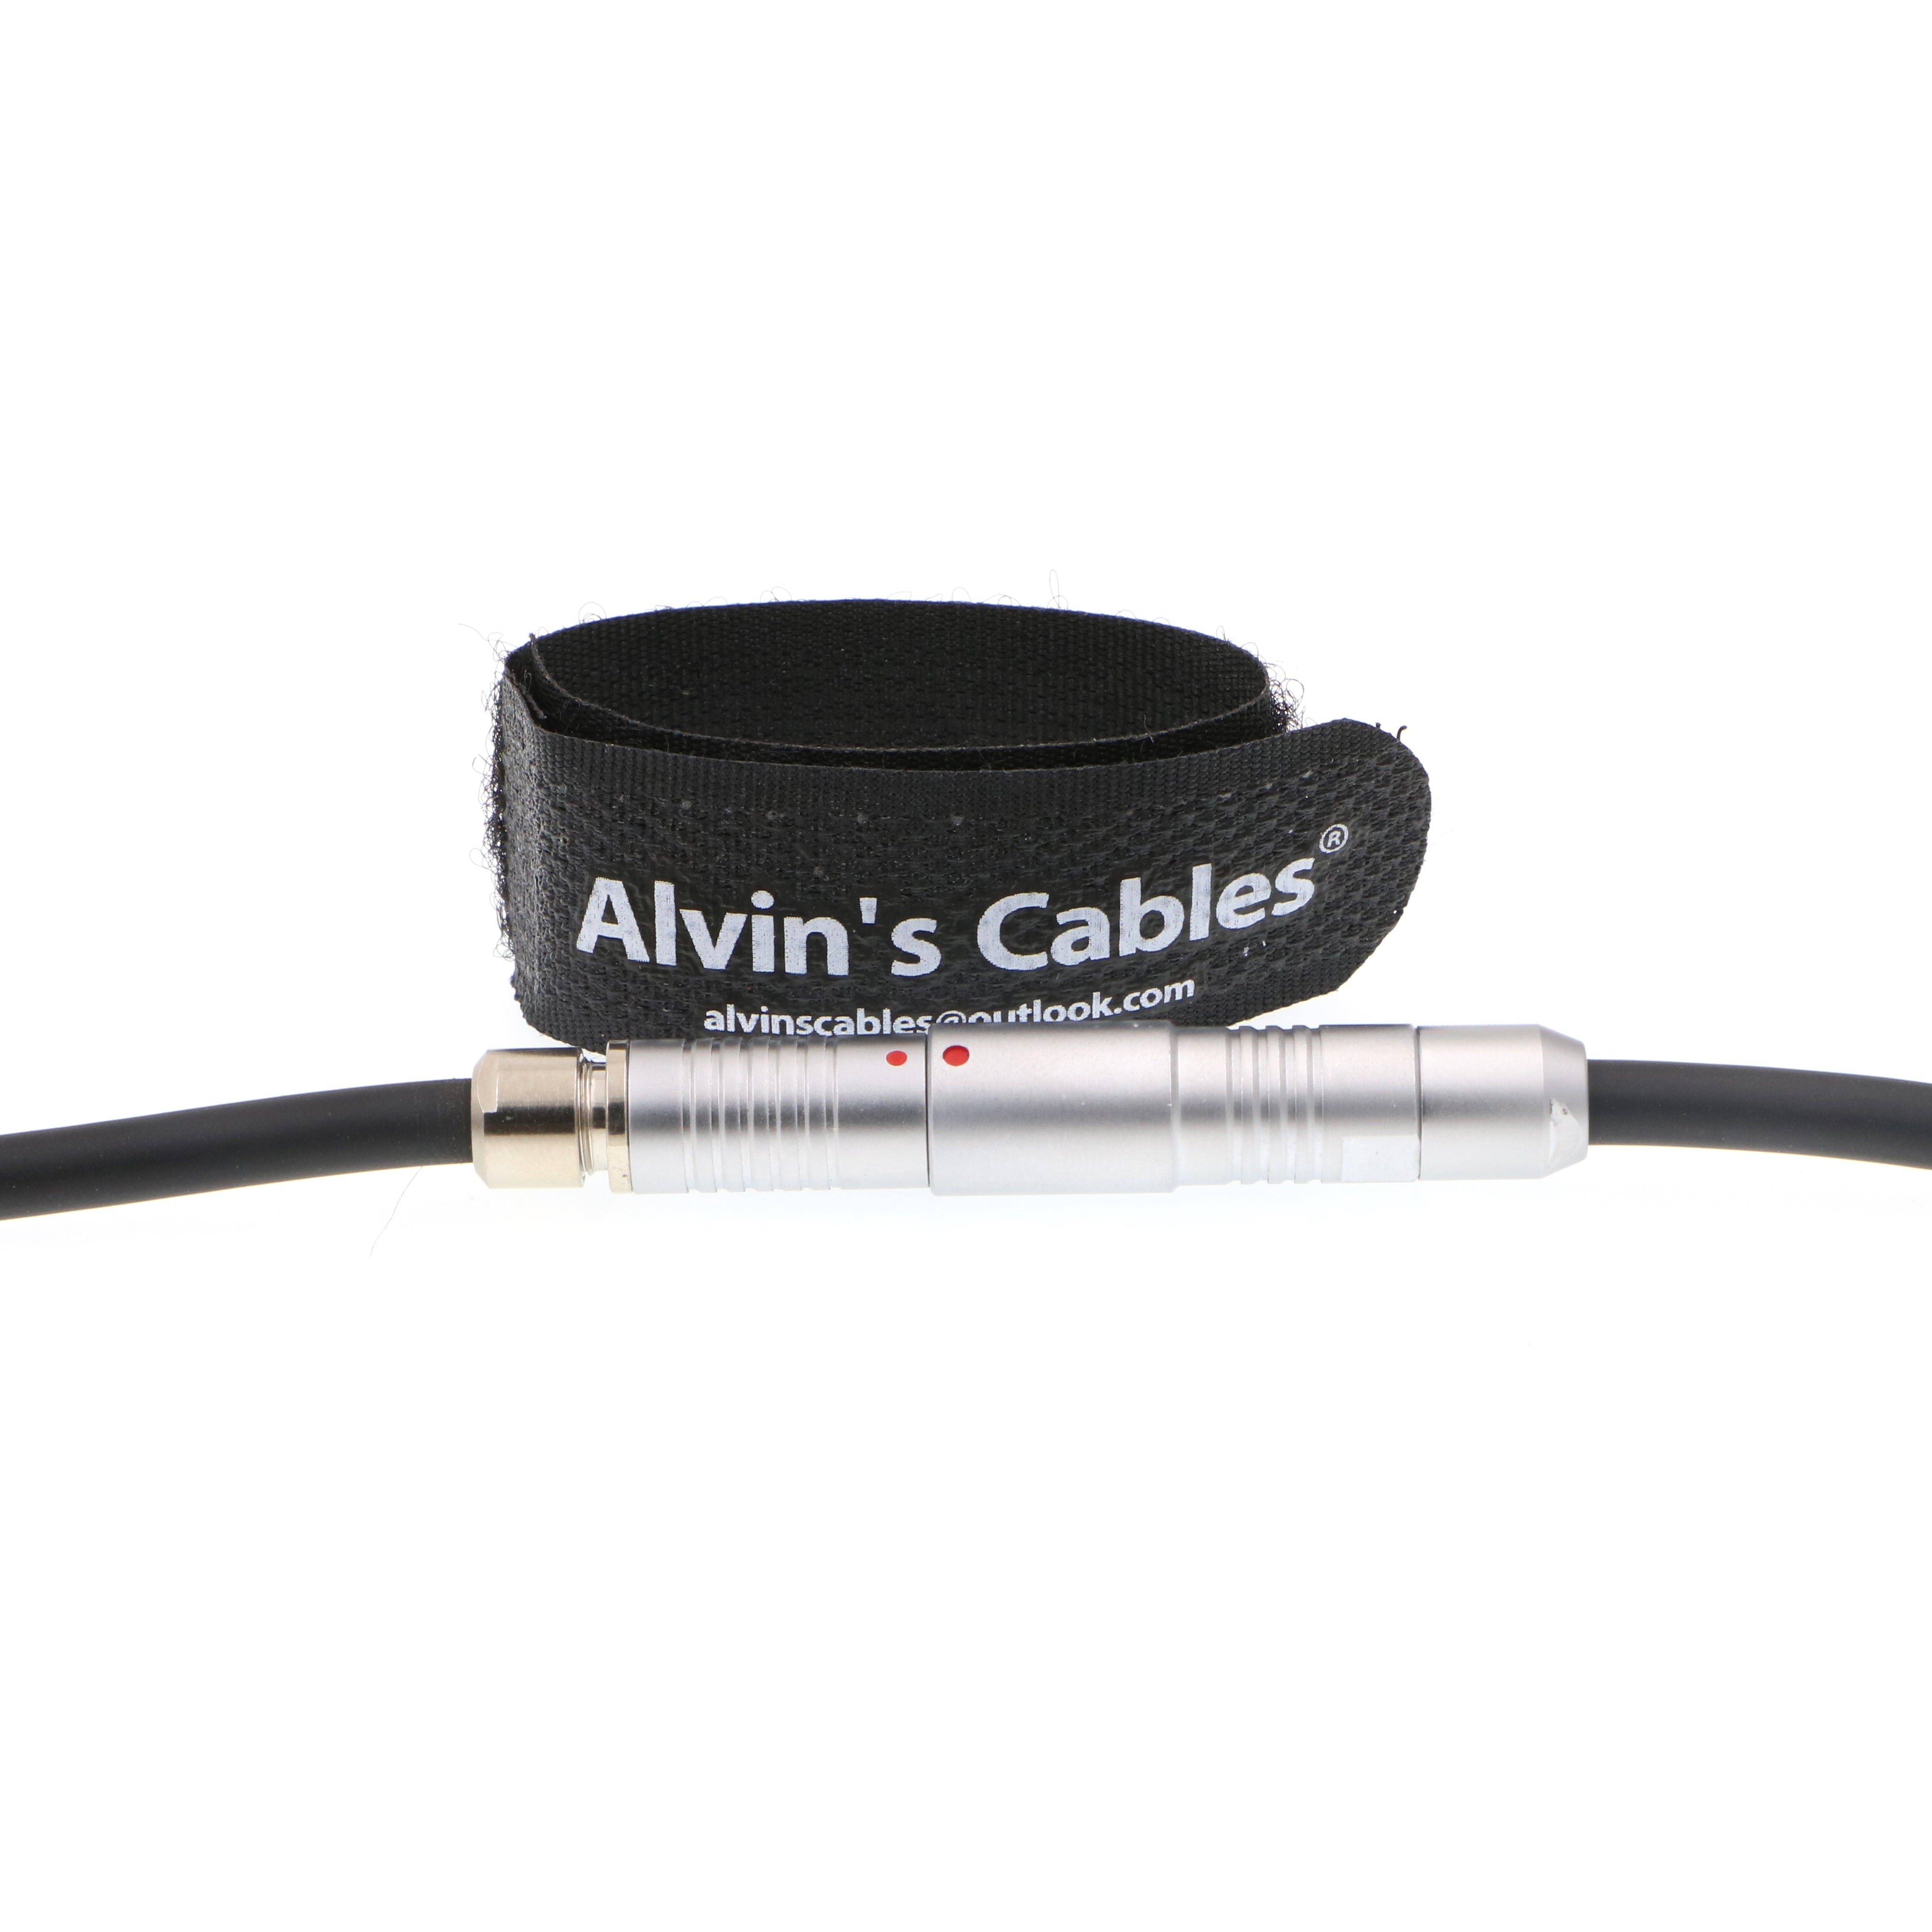 Alvin's Cables Arri 3 Pin Run Stop Verlängerungskabel 3 Pin Stecker auf 3 Pin Buchse für ARRI WVT-1 Sender, einen WVR-1 Empfänger oder einen UMC-4 Controller